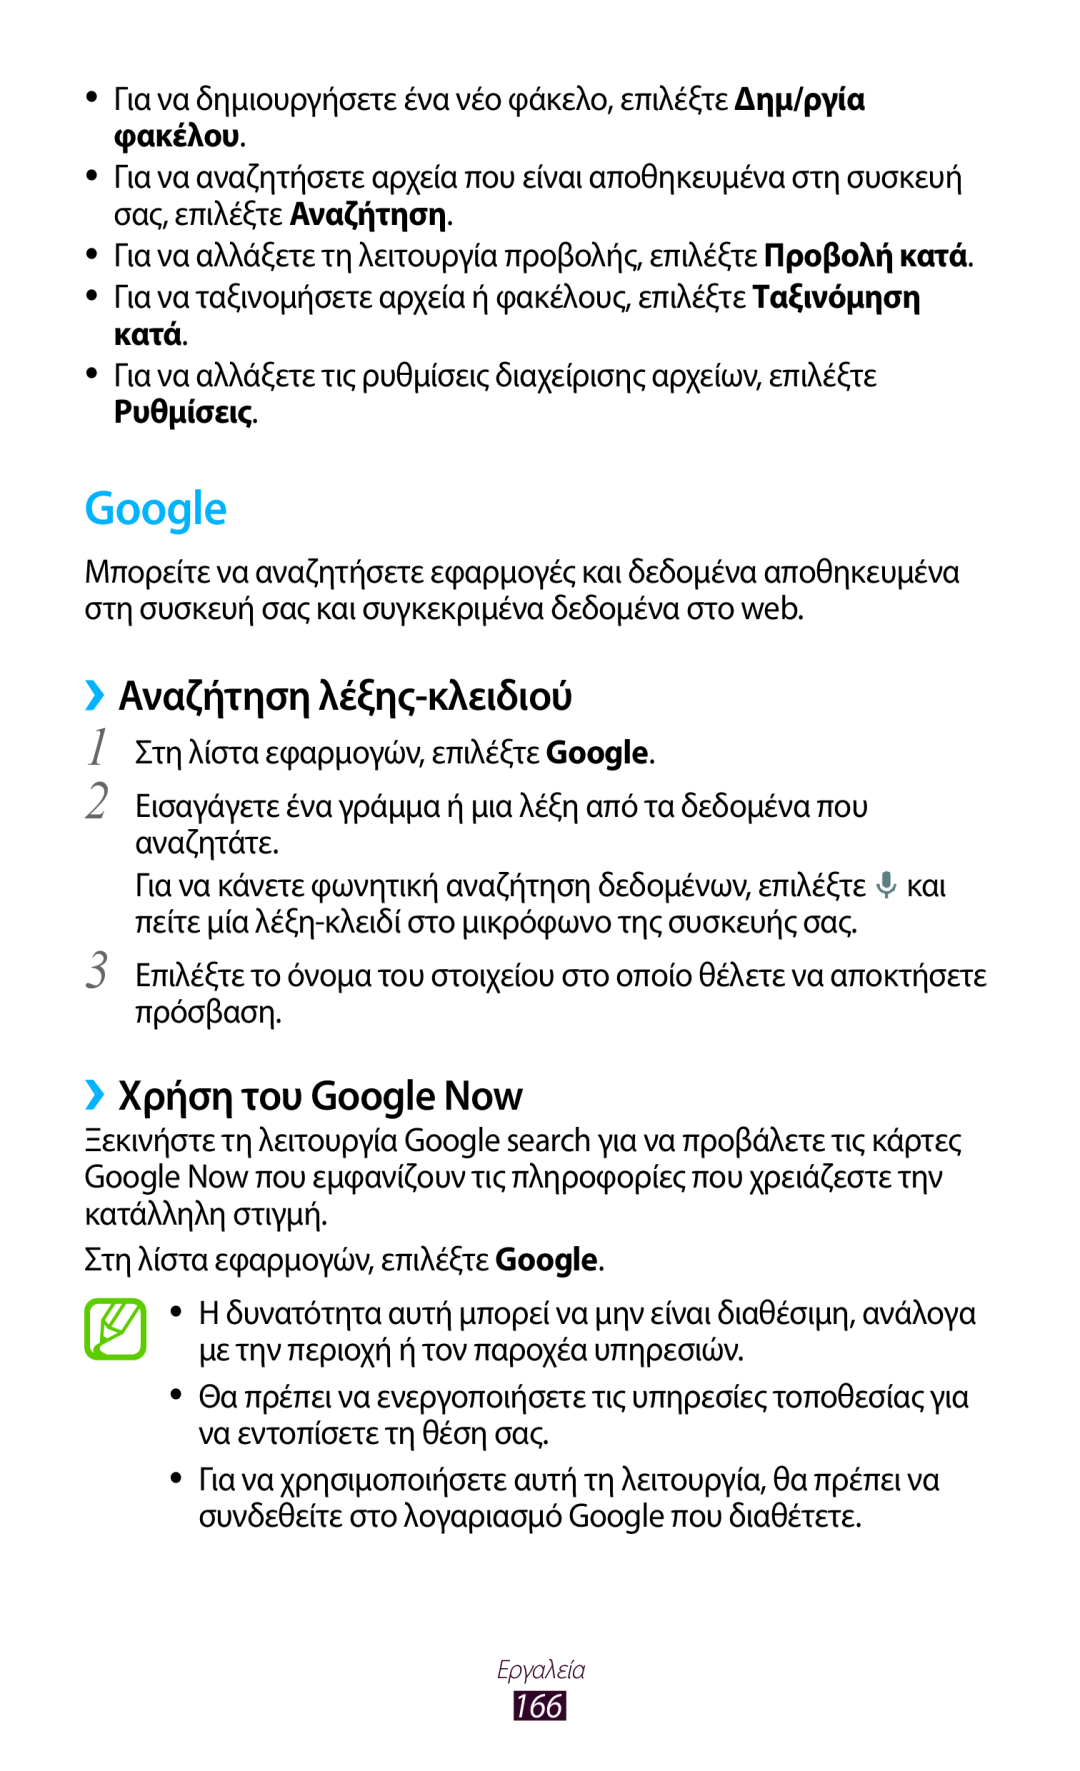 Samsung GT-N7000ZBEVGR, GT-N7000ZBAEUR, GT-N7000RWAEUR manual ››Αναζήτηση λέξης-κλειδιού, ››Χρήση του Google Now 